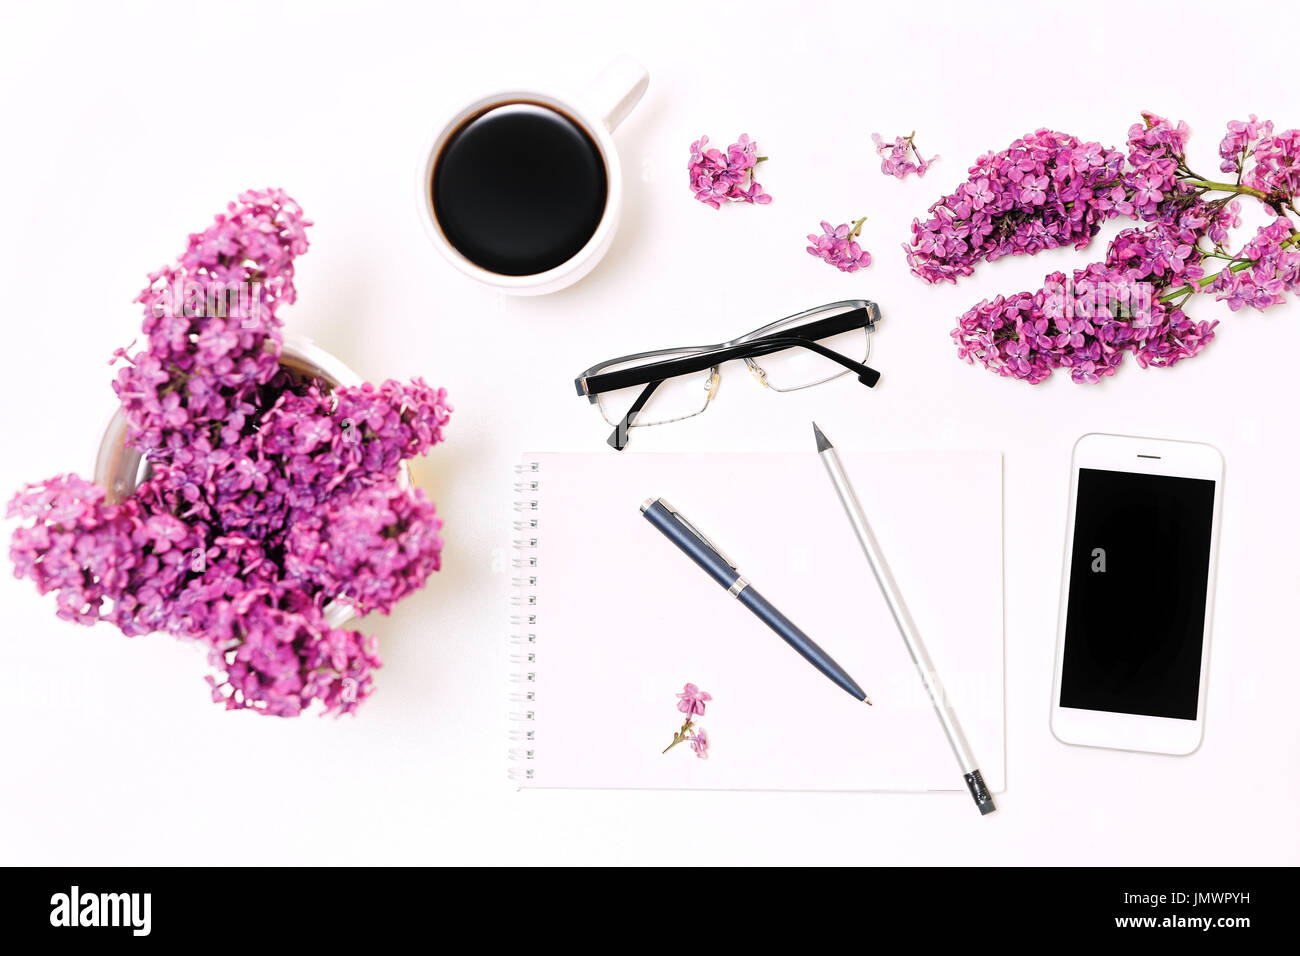 Lieu de travail avec téléphone mobile, ordinateur portable, stylo, crayon, verres et lilas fleurs sur l'arrière-plan du tableau blanc. Mise à plat, vue du dessus Banque D'Images